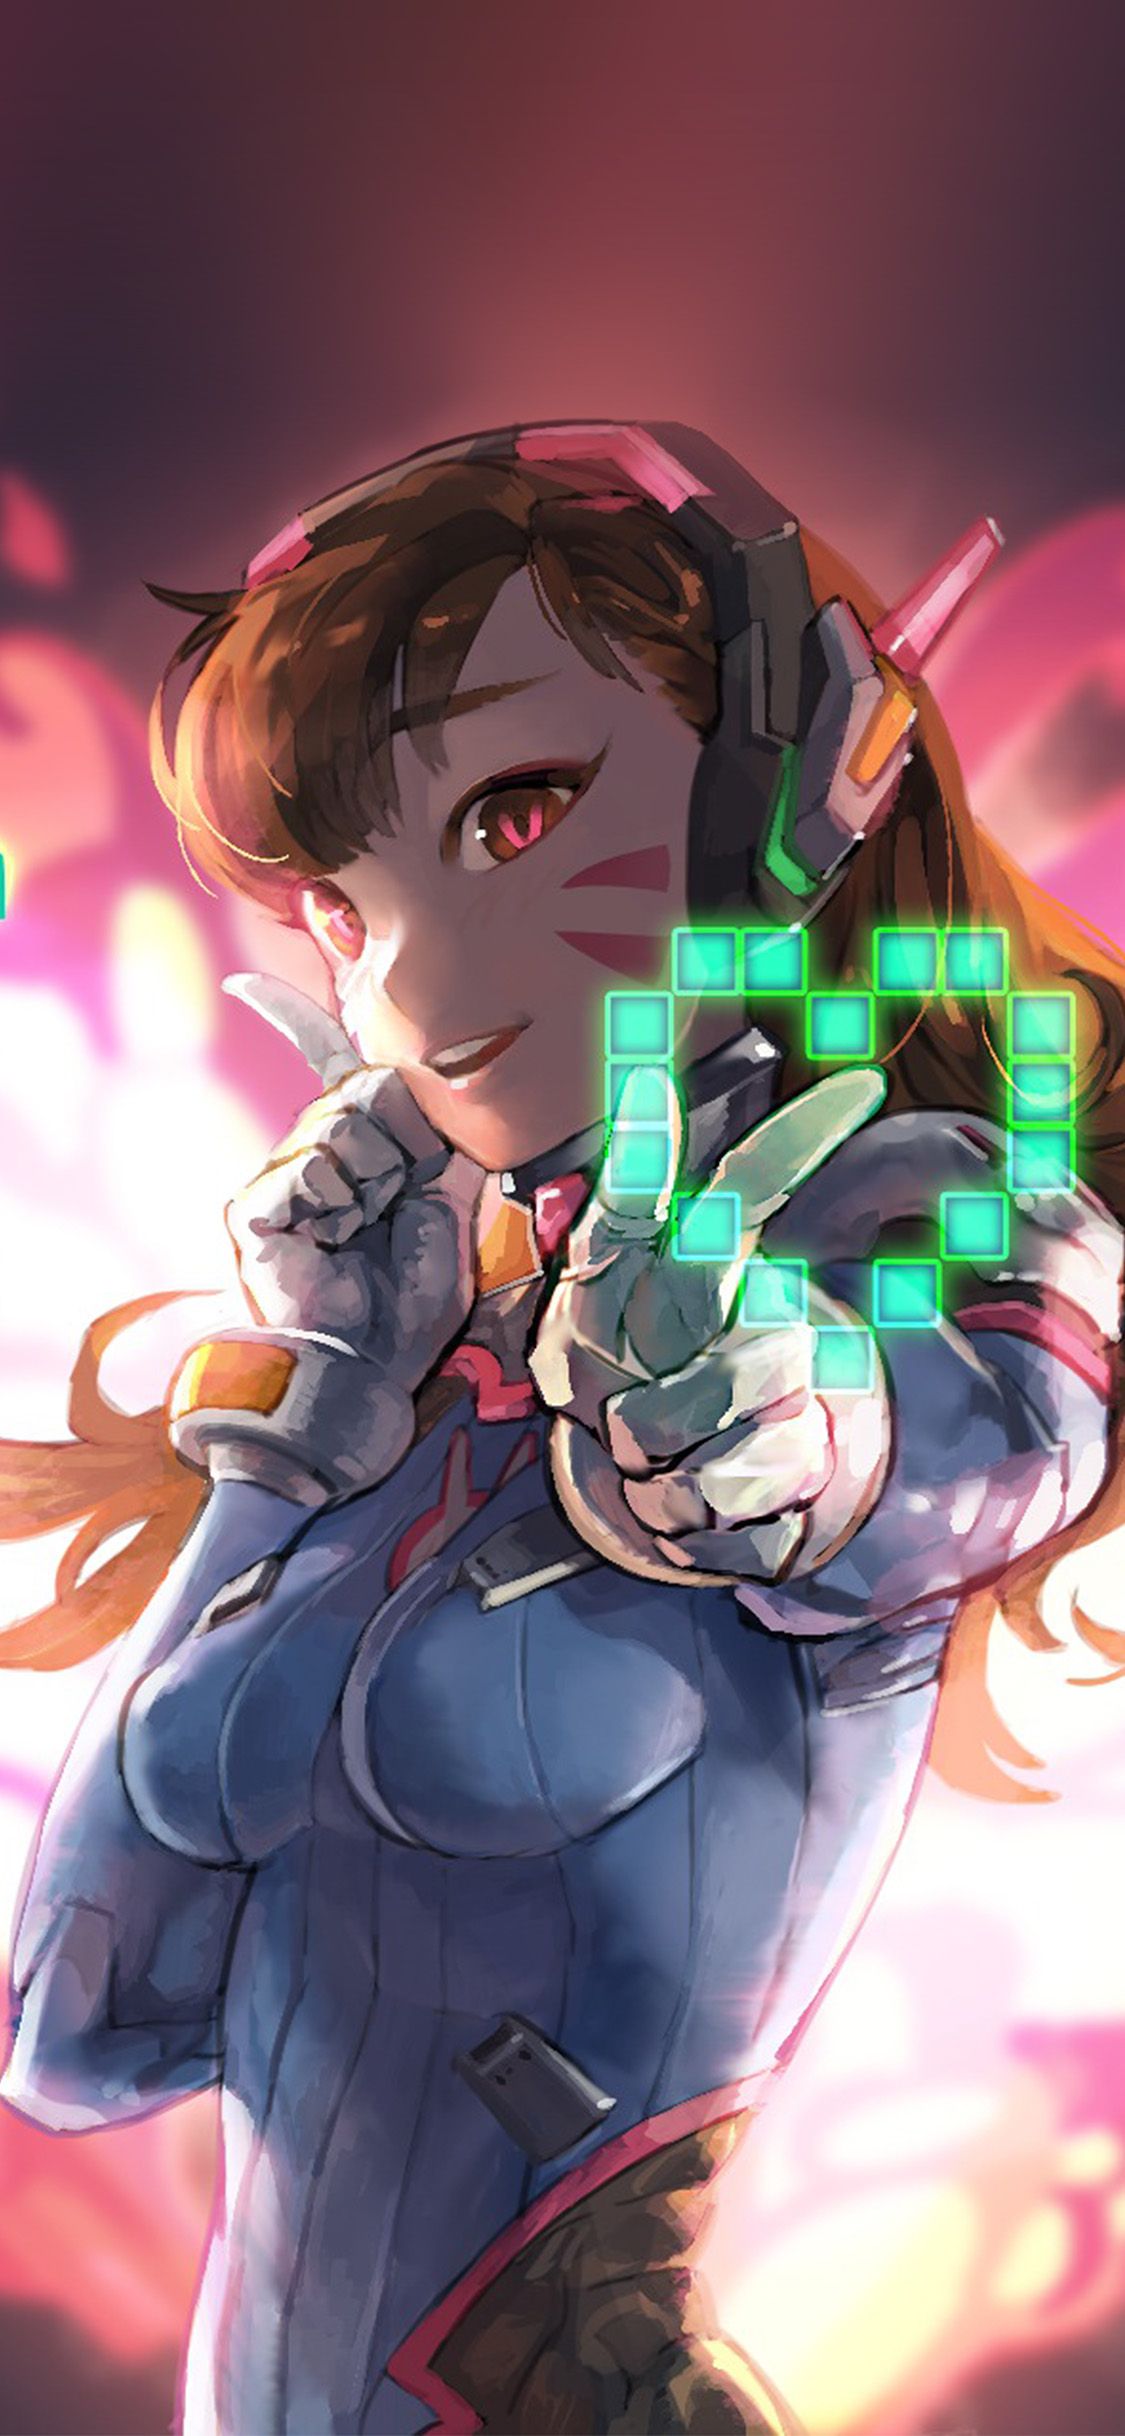 Gamer girl anime wallpaper